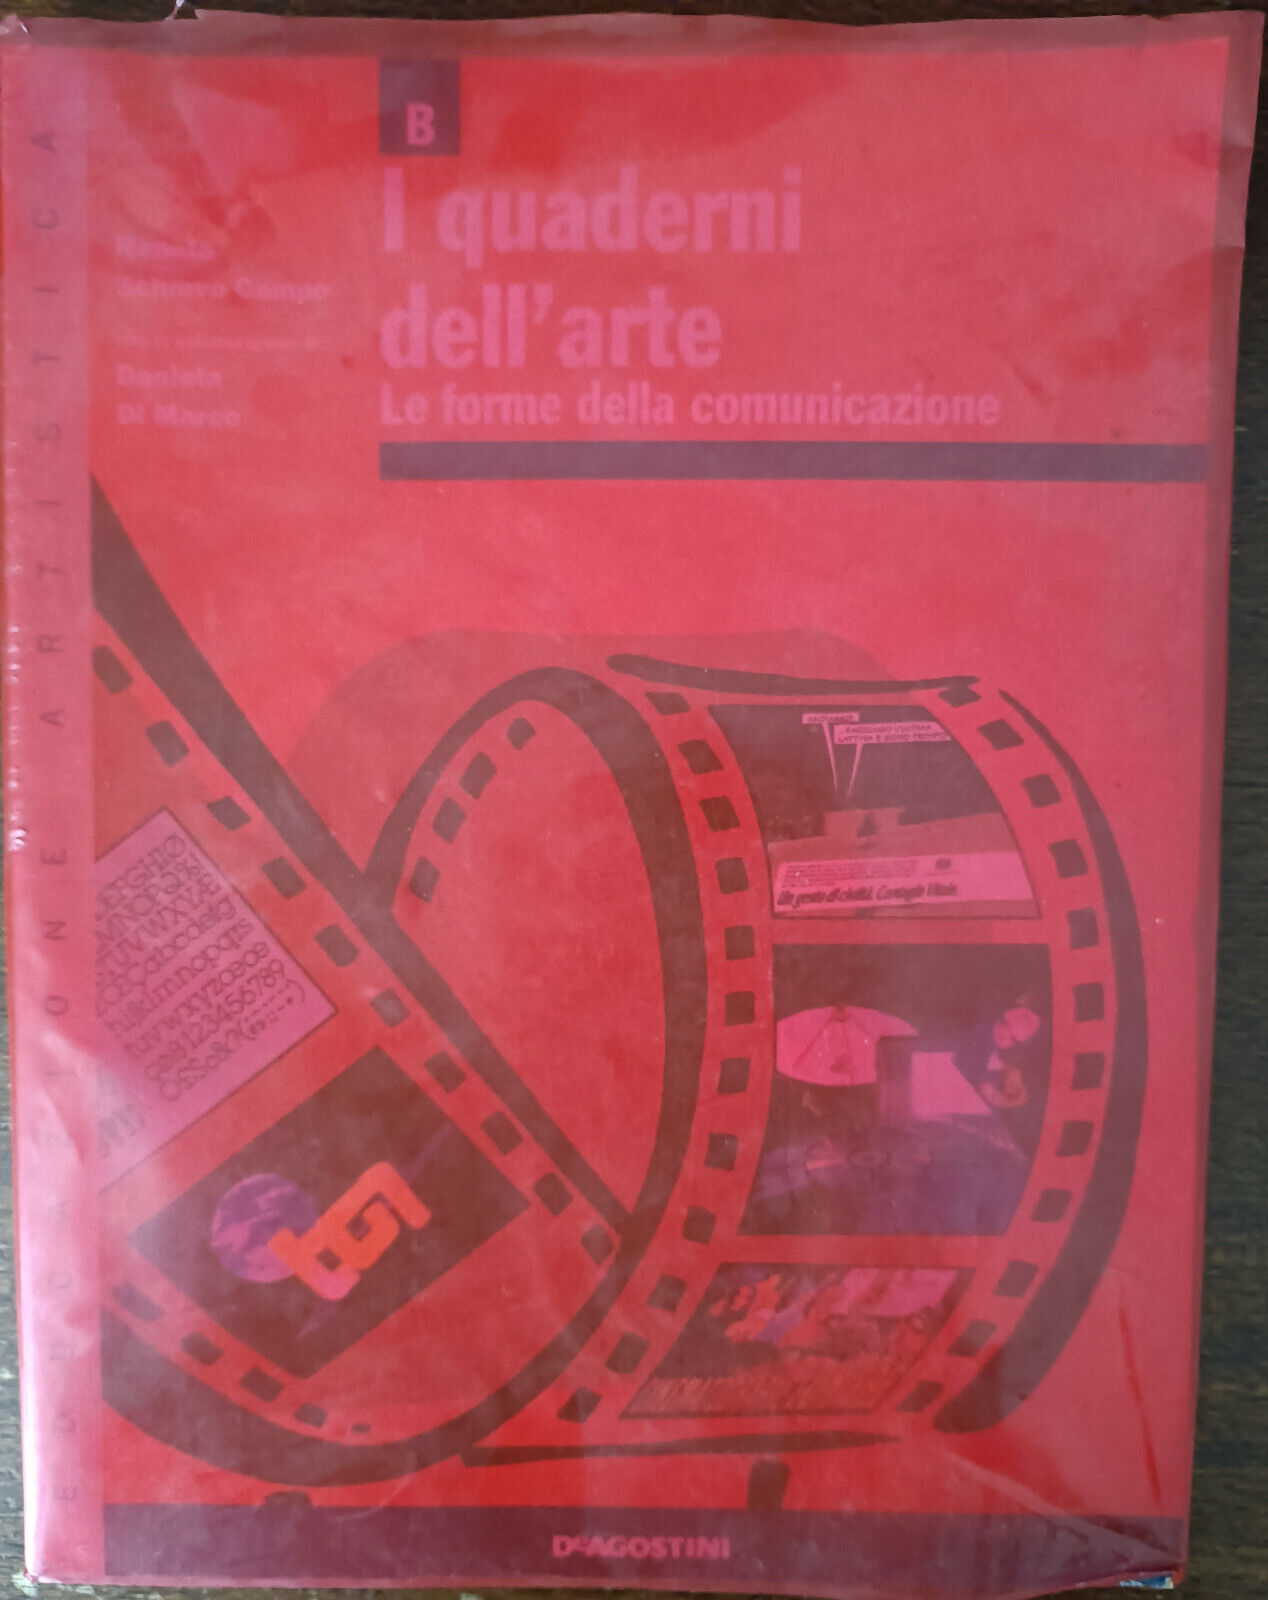 I quaderni dell'Arte. Vol. B - Renata Schiavo Campo - De Agostini, 1997 - A